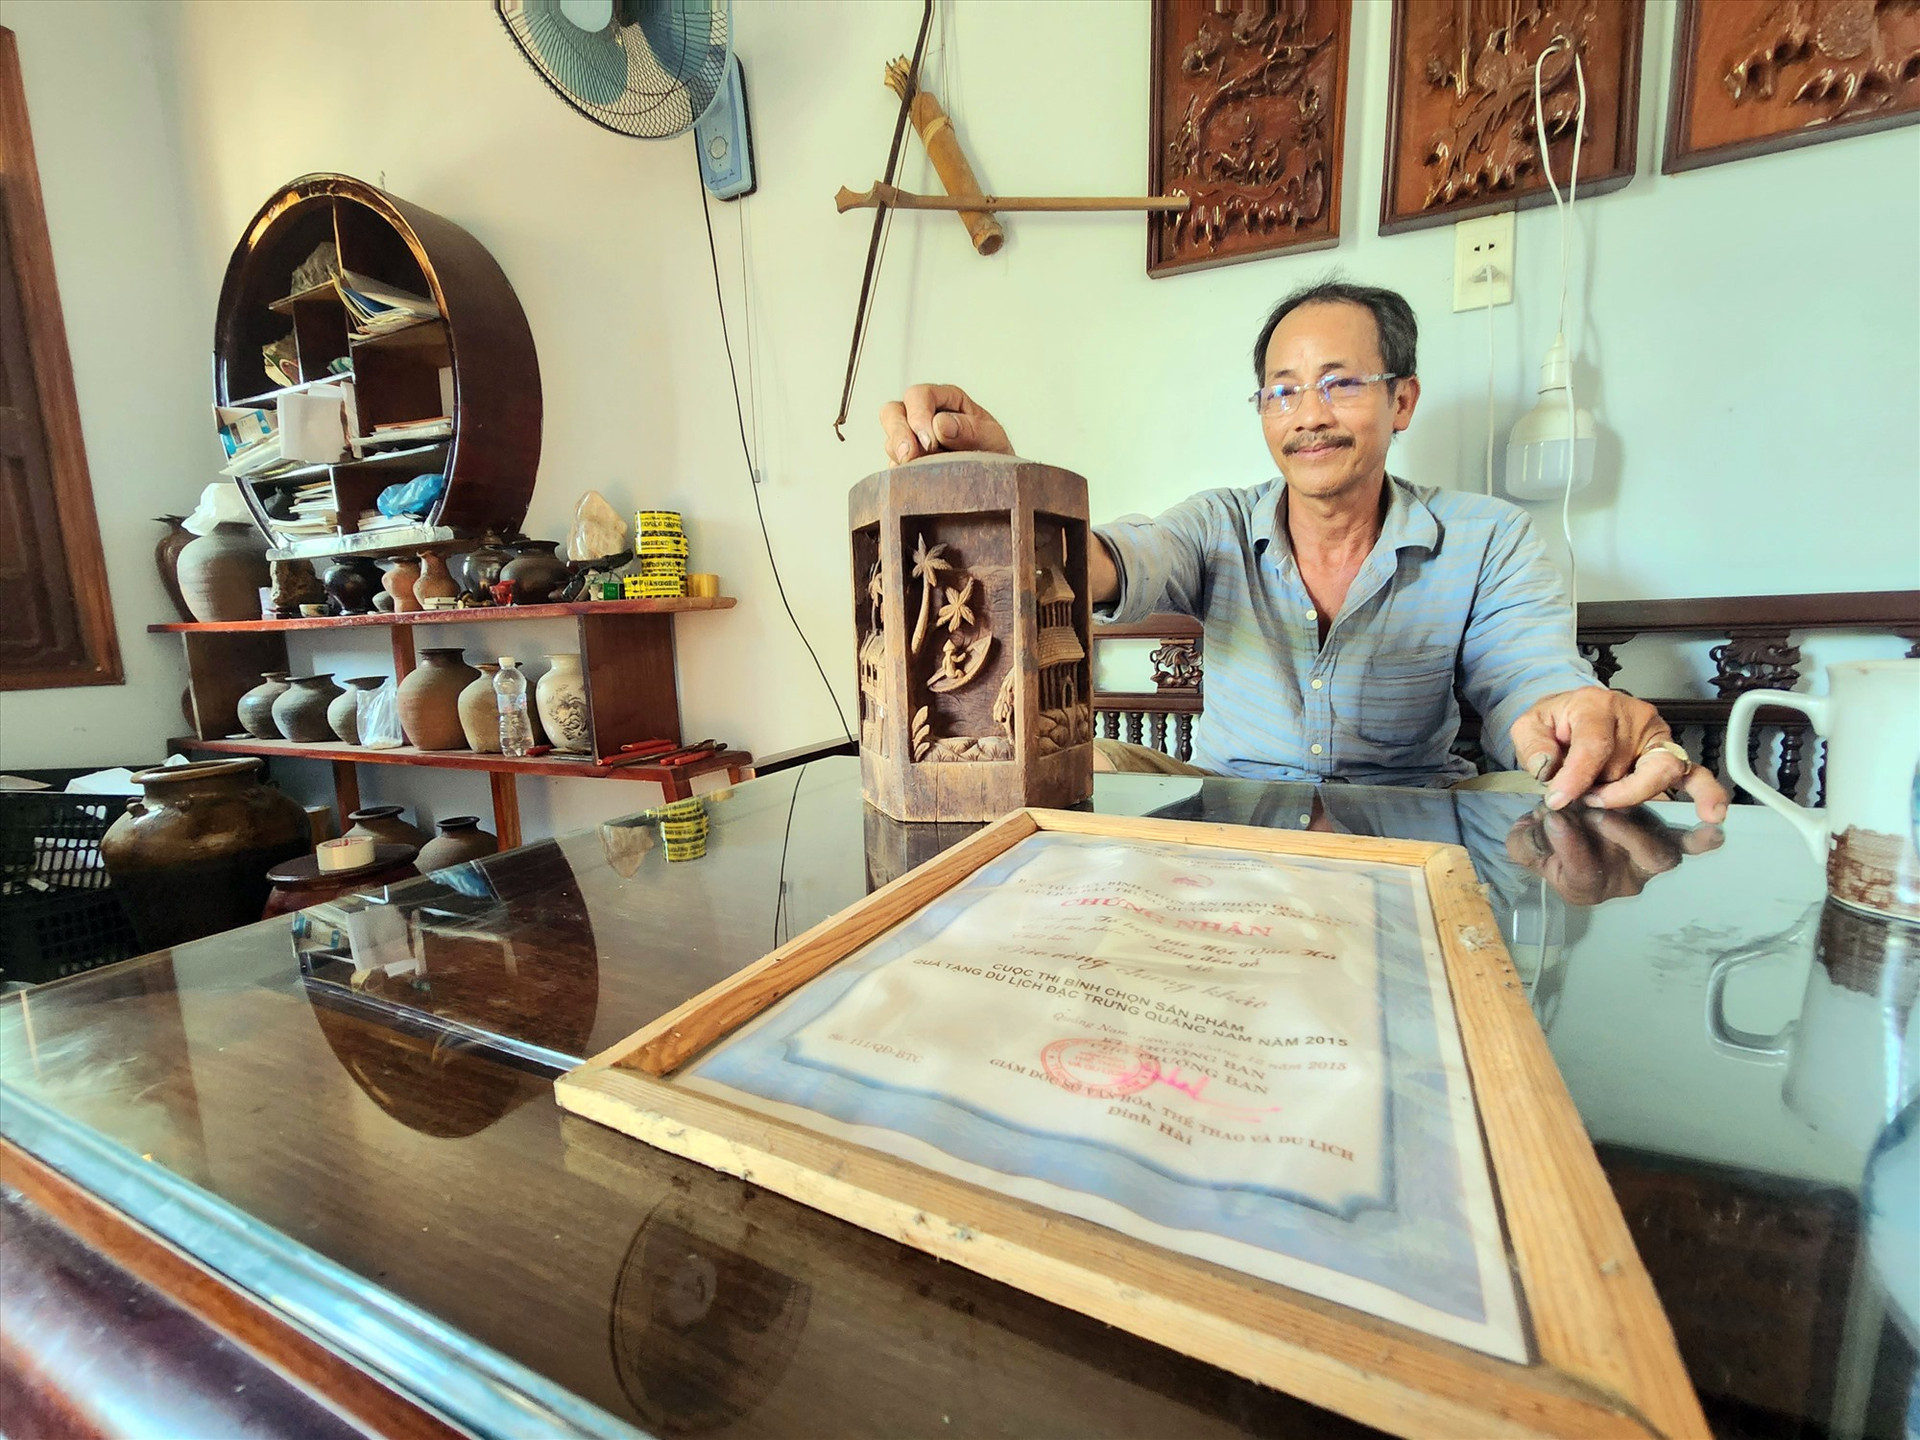 Ông Phạm Miên đã giã từ nghề mộc 3 năm nay ngồi kể chuyện bên những dấu ấn một thời vàng son với nghề. Ảnh: Q.T